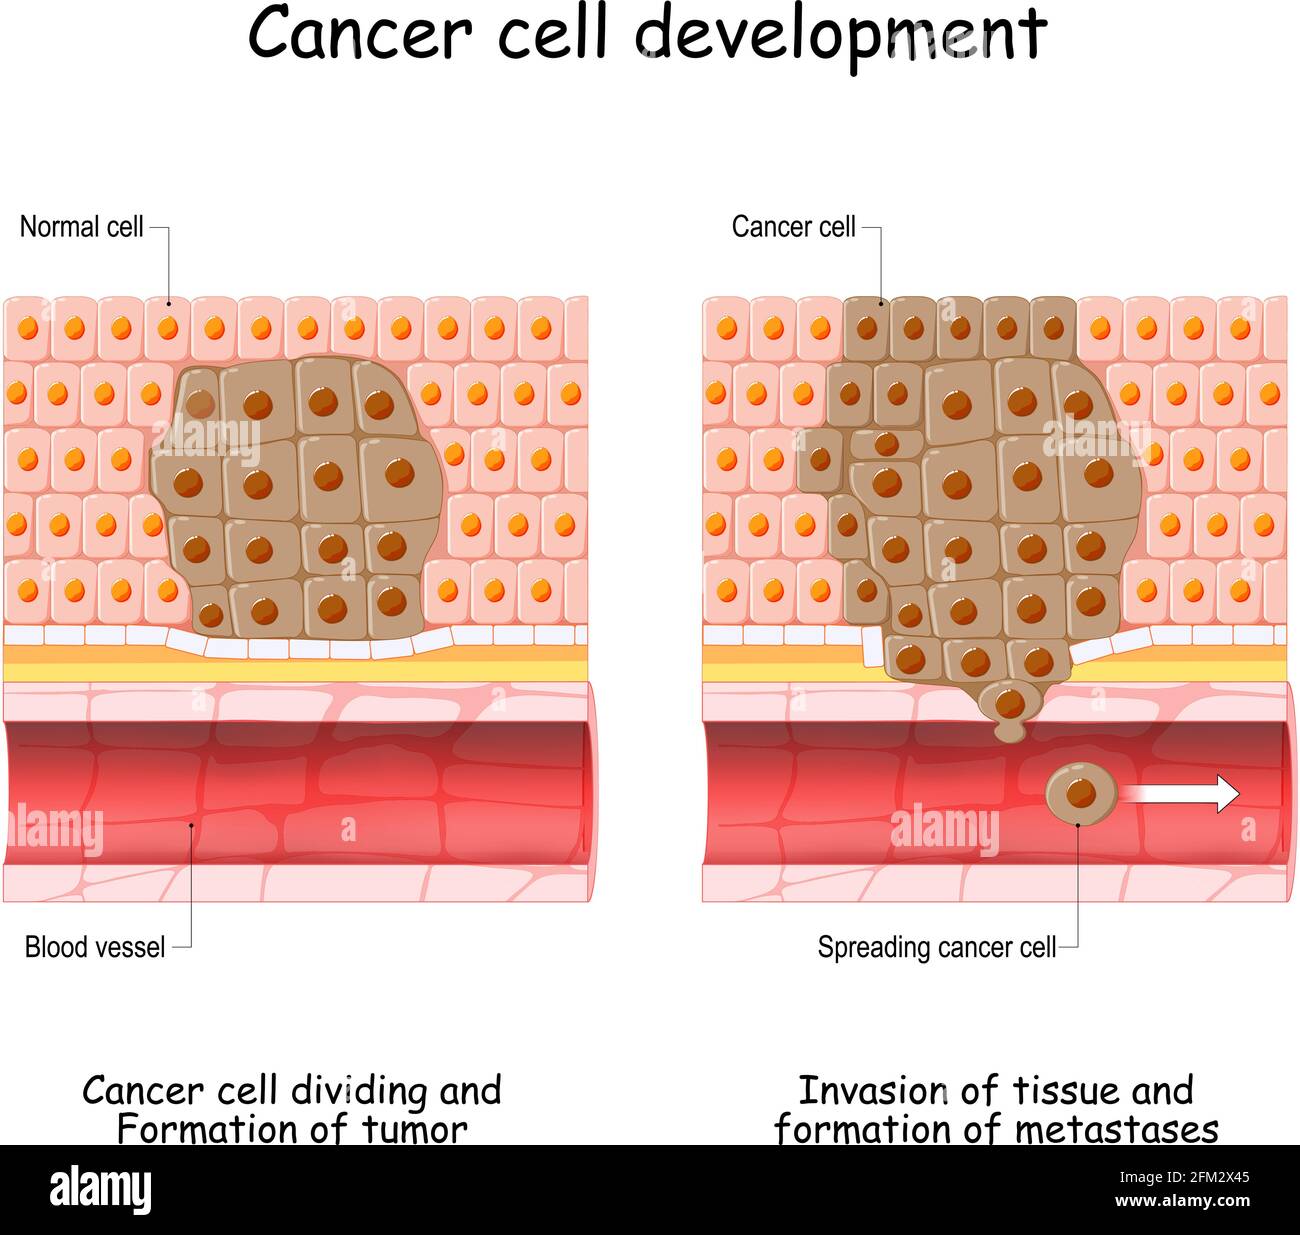 Krebsentwicklung von der normalen Zelle zur Tumorbildung, Ausbreitung von Krebszellen im Blutfluss, Invasion von anderem Gewebe und Bildung von Metastasen Stock Vektor